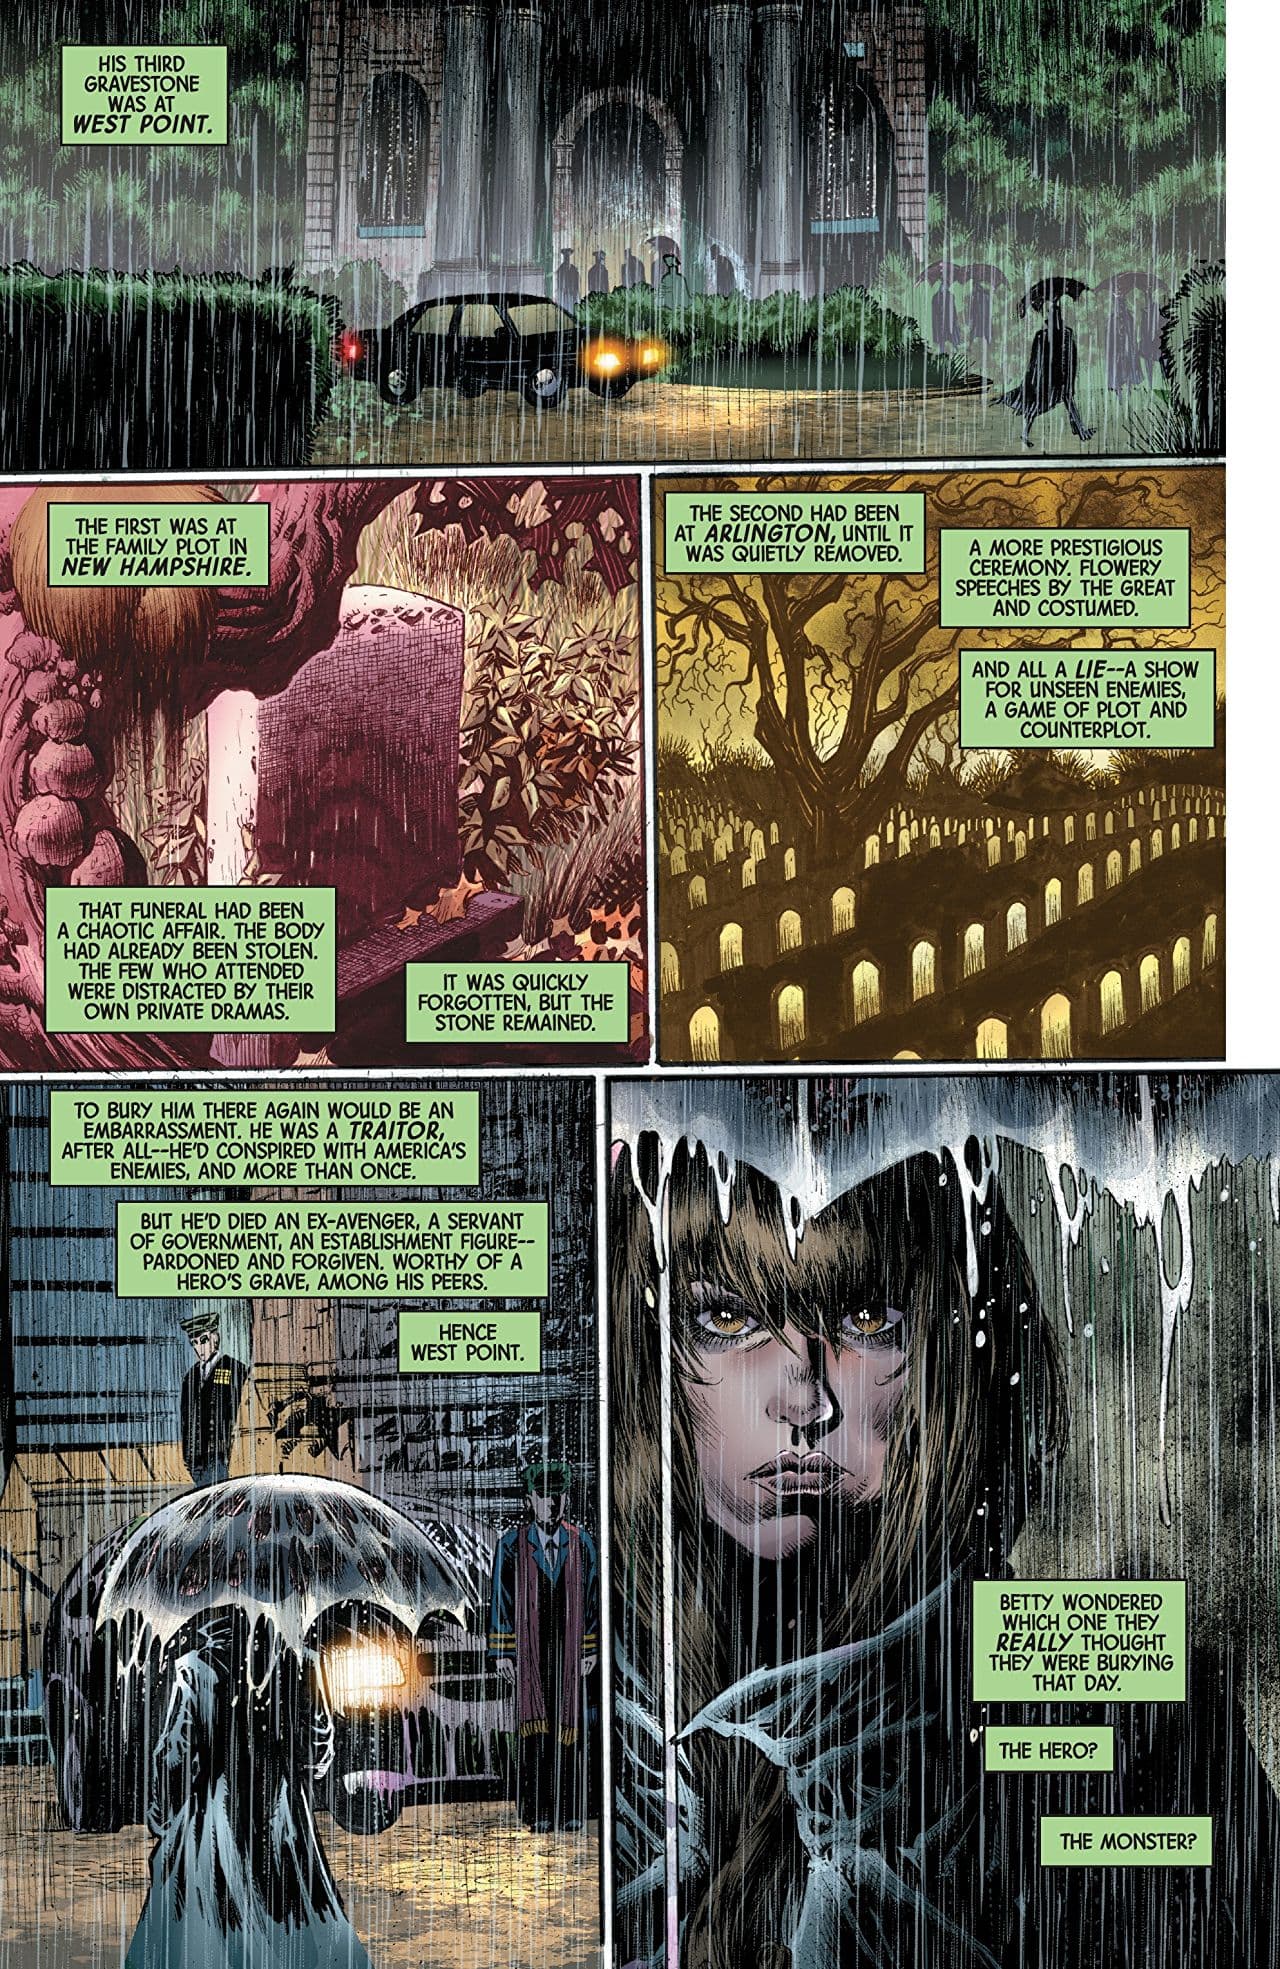 Immortal Hulk #14